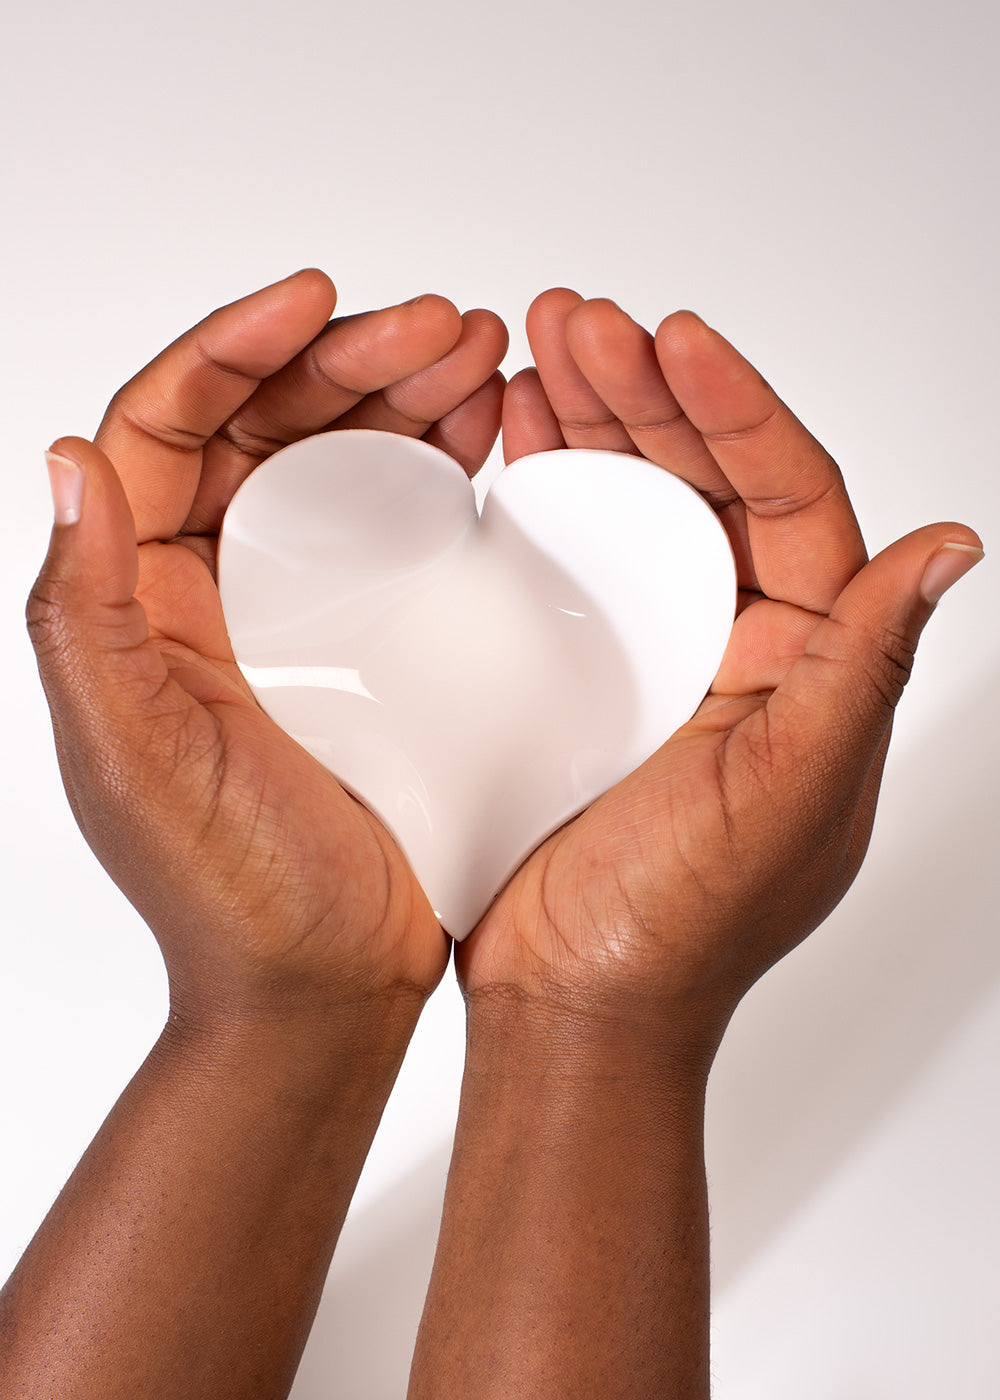 Paleta A de silicona de Aleana Hand - Forma de corazón